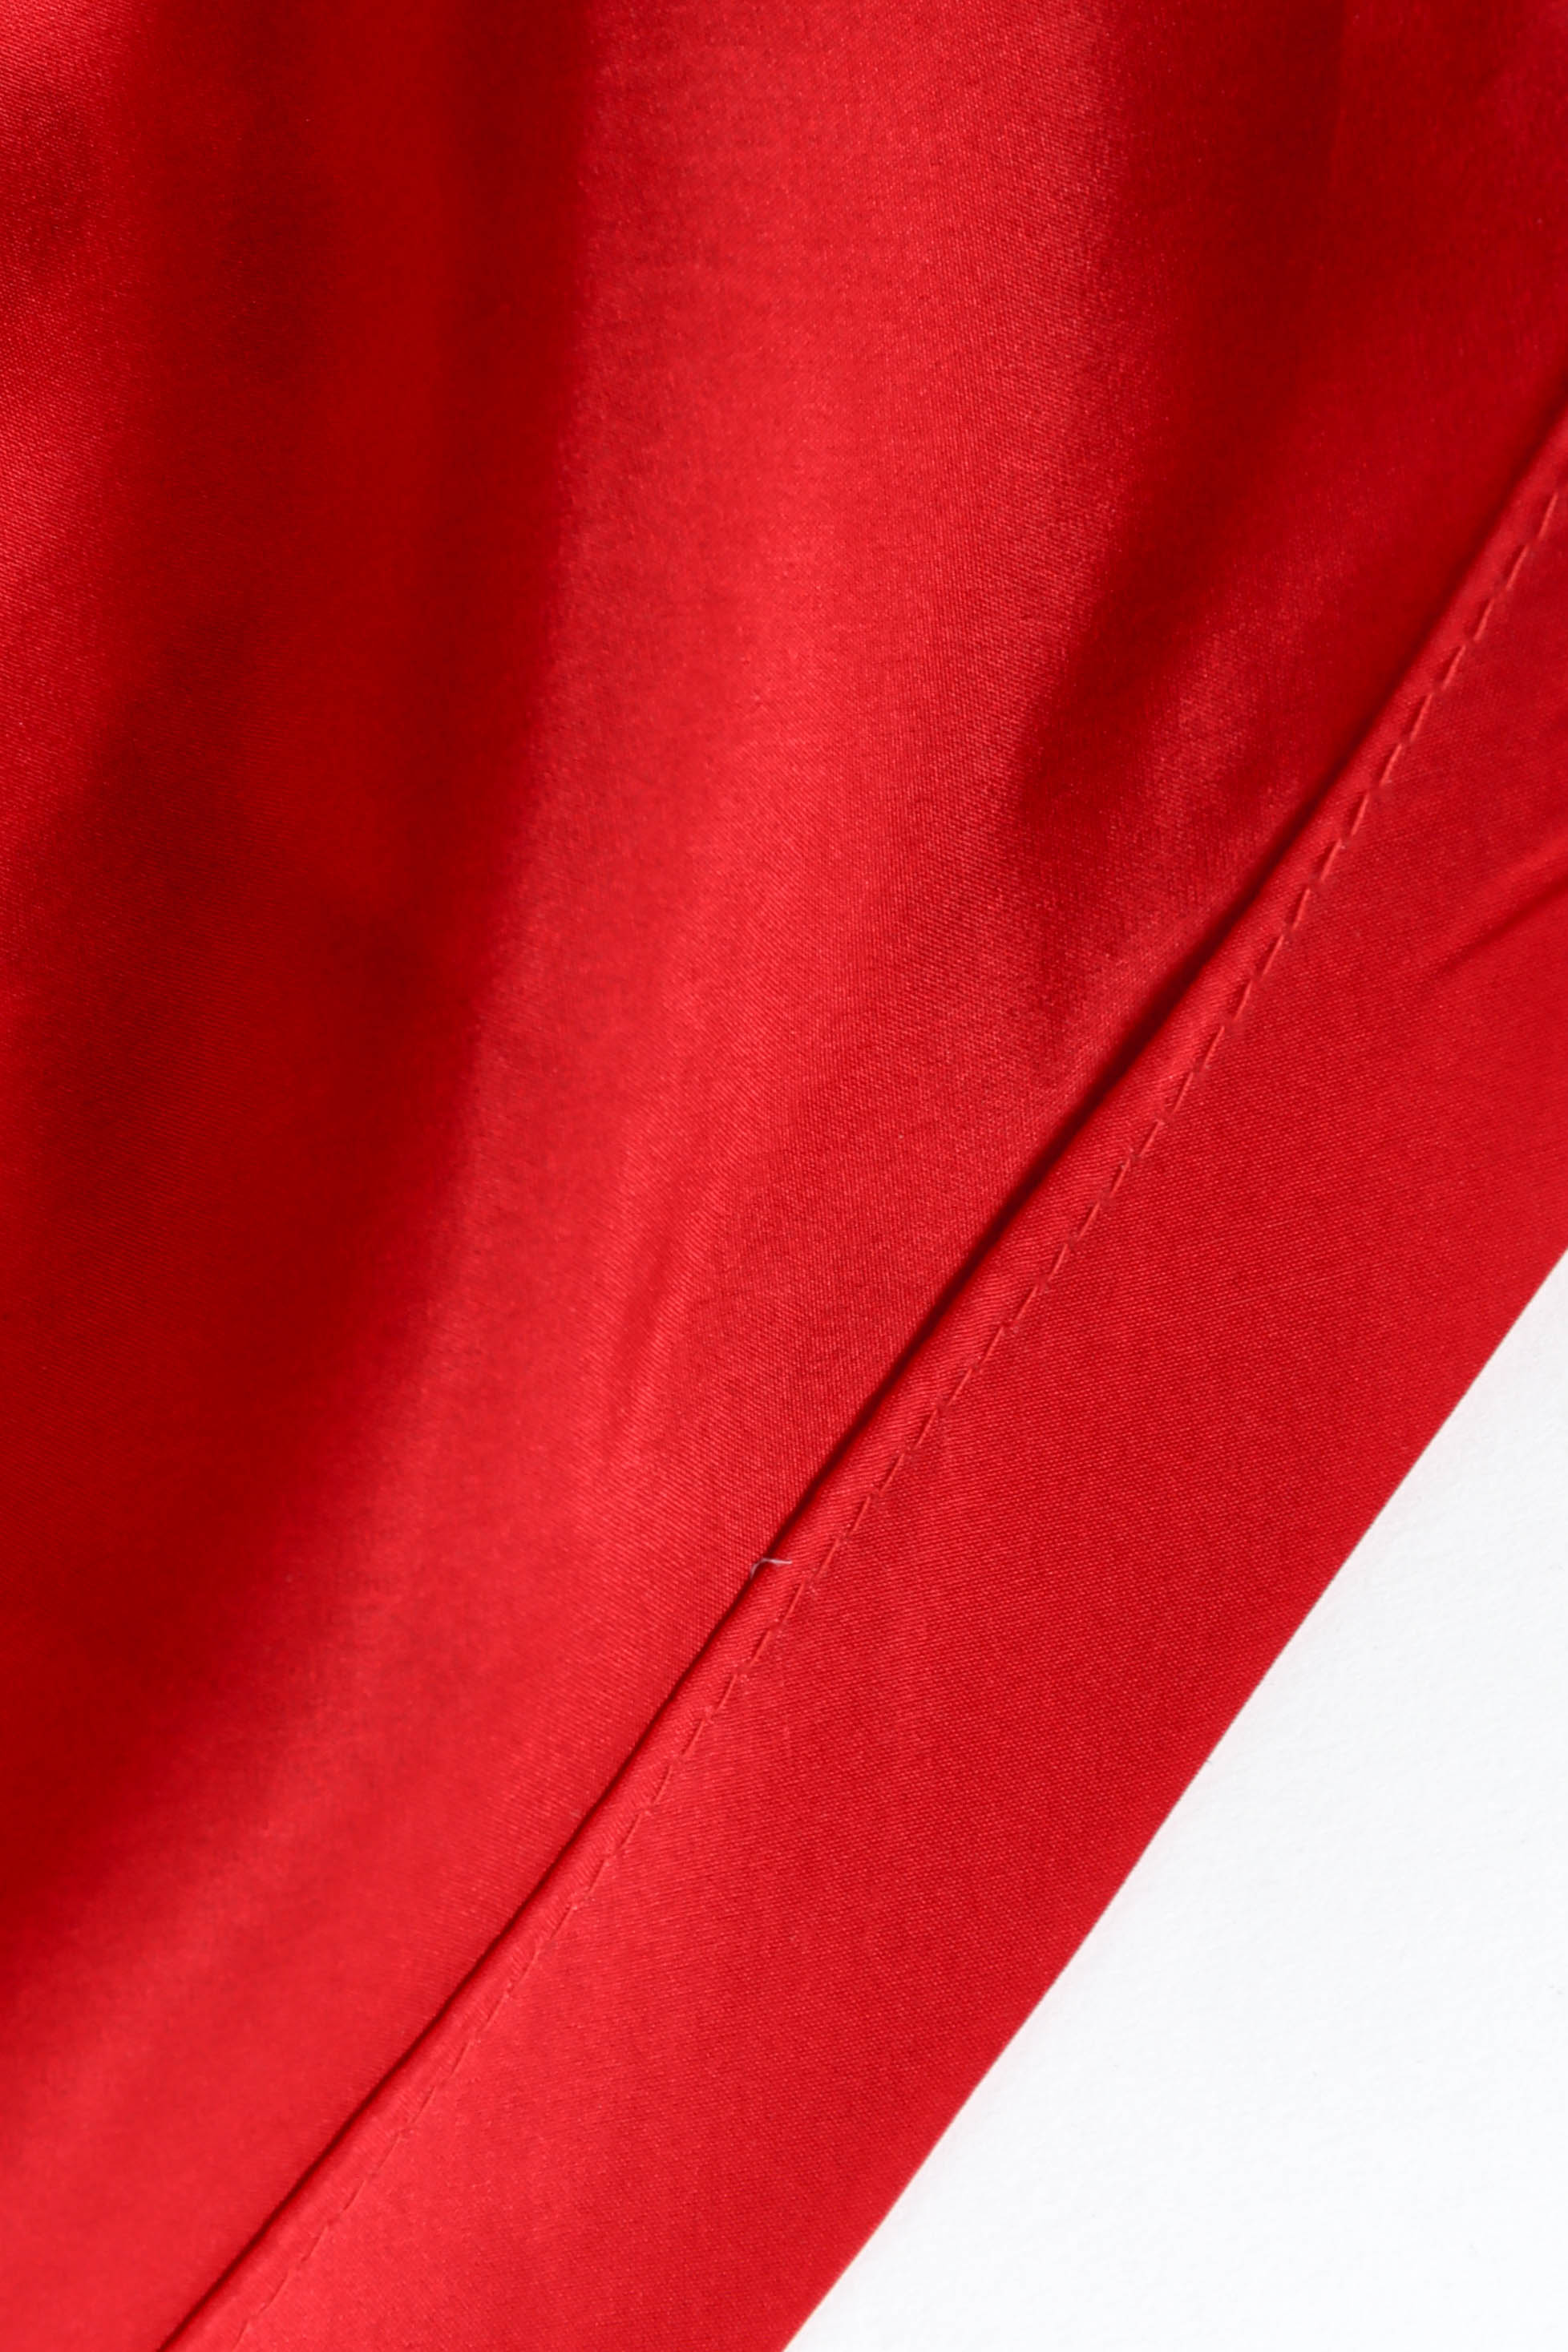 Vintage Louis Féraud Cloud Print Soirée Dress candy apple red silk lining @ Recess LA